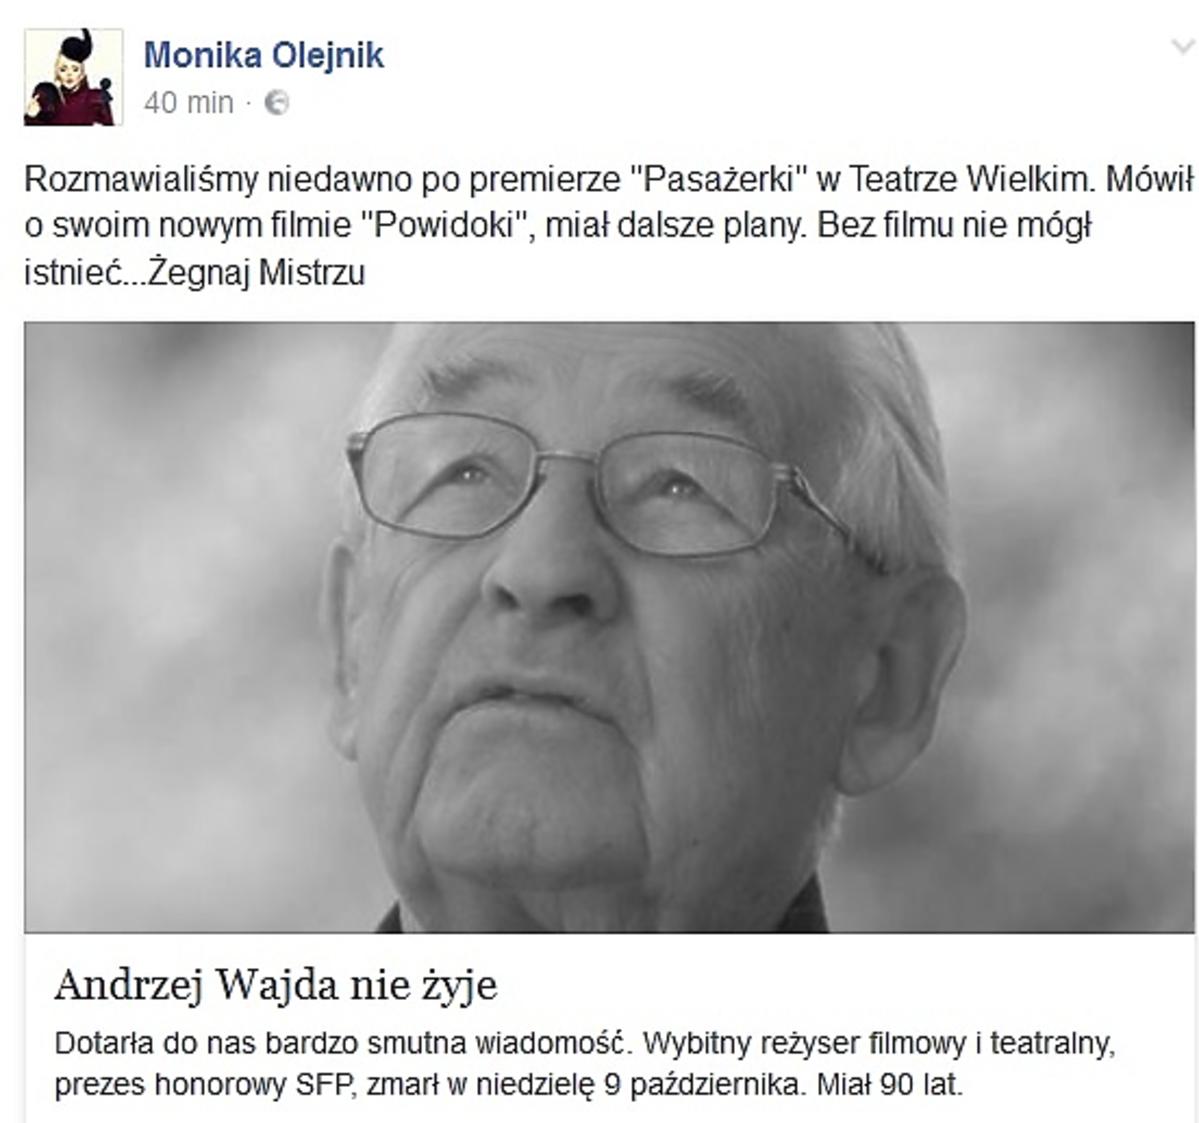 Wpis Moniki Olejnik po śmierci Andrzeja Wajdy